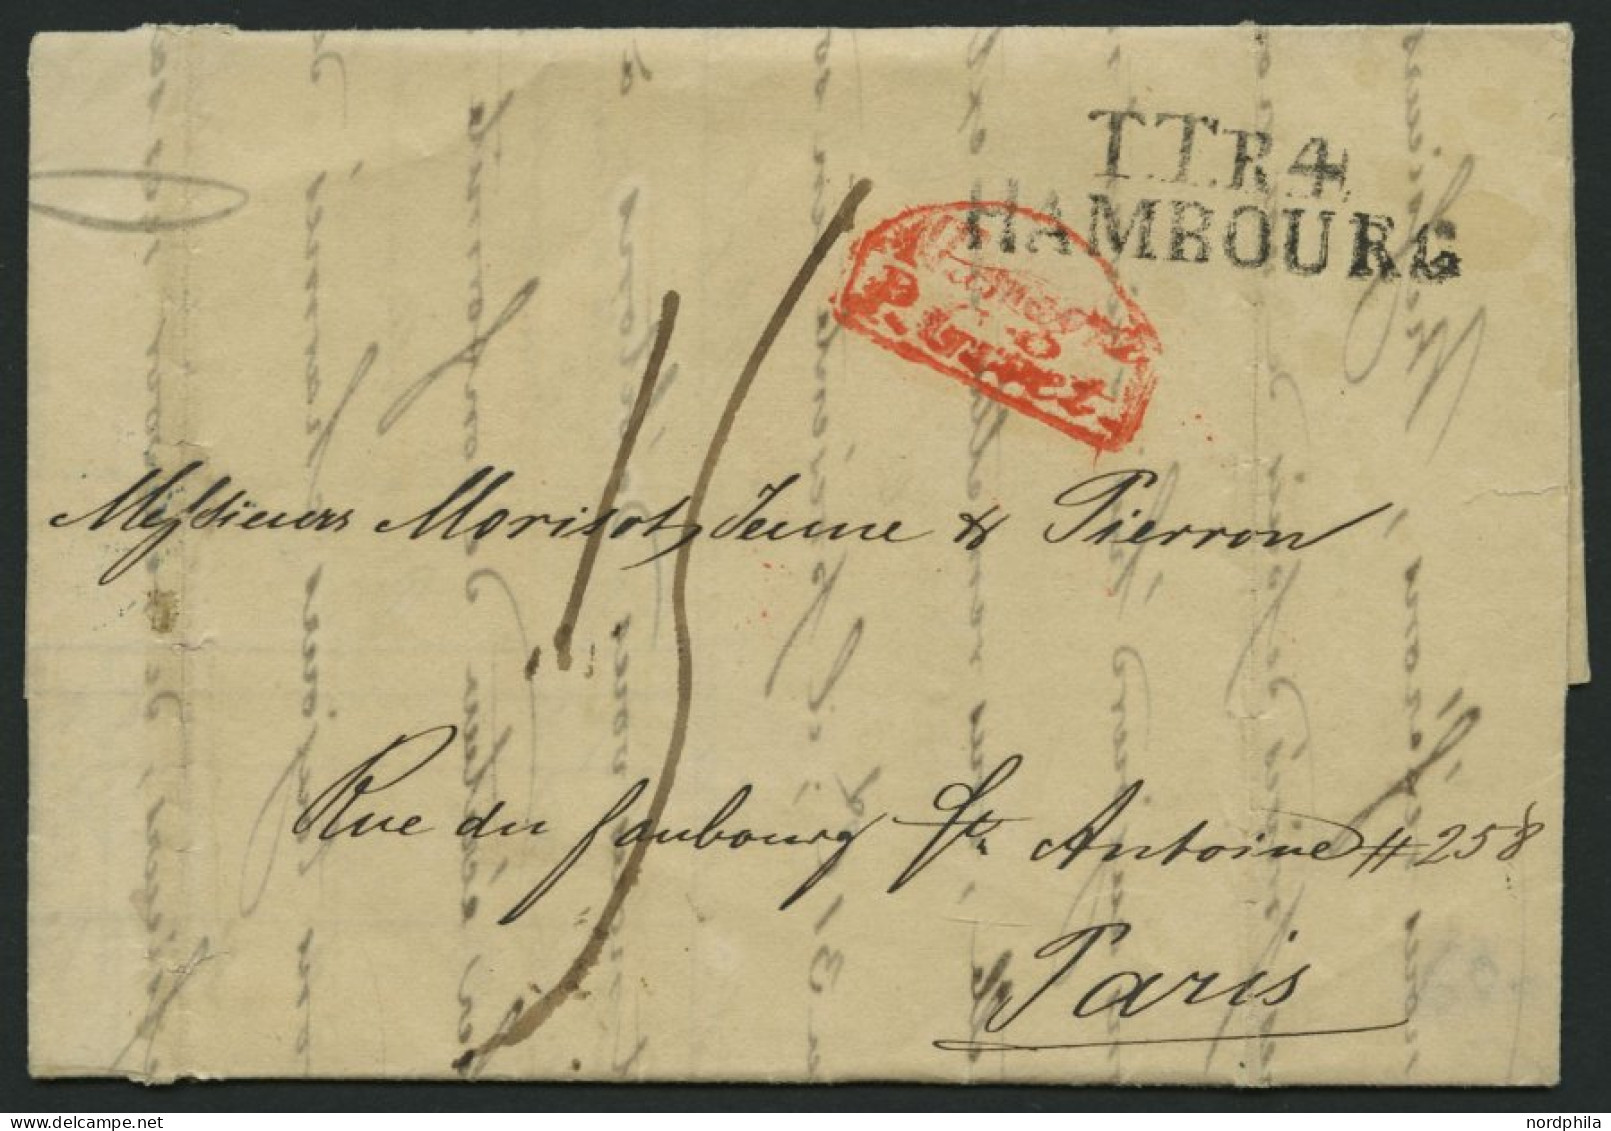 HAMBURG - THURN UND TAXISCHES O.P.A. 1833, TT.R.4. HAMBOURG, L2 Auf Rechnungsbrief Nach Paris, Roter ALLEMAGNE P. GIVET, - Prephilately